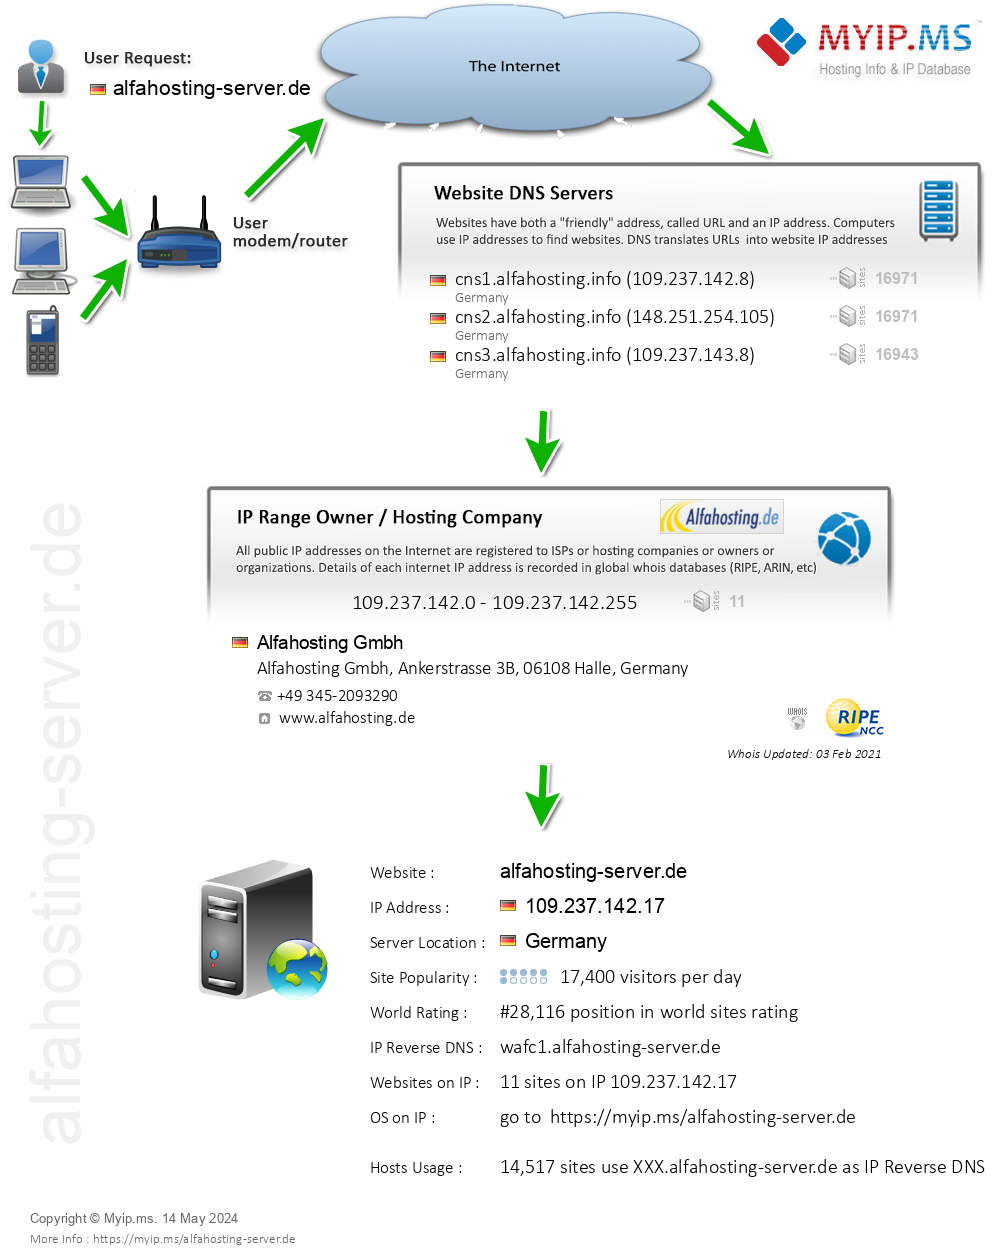 Alfahosting-server.de - Website Hosting Visual IP Diagram